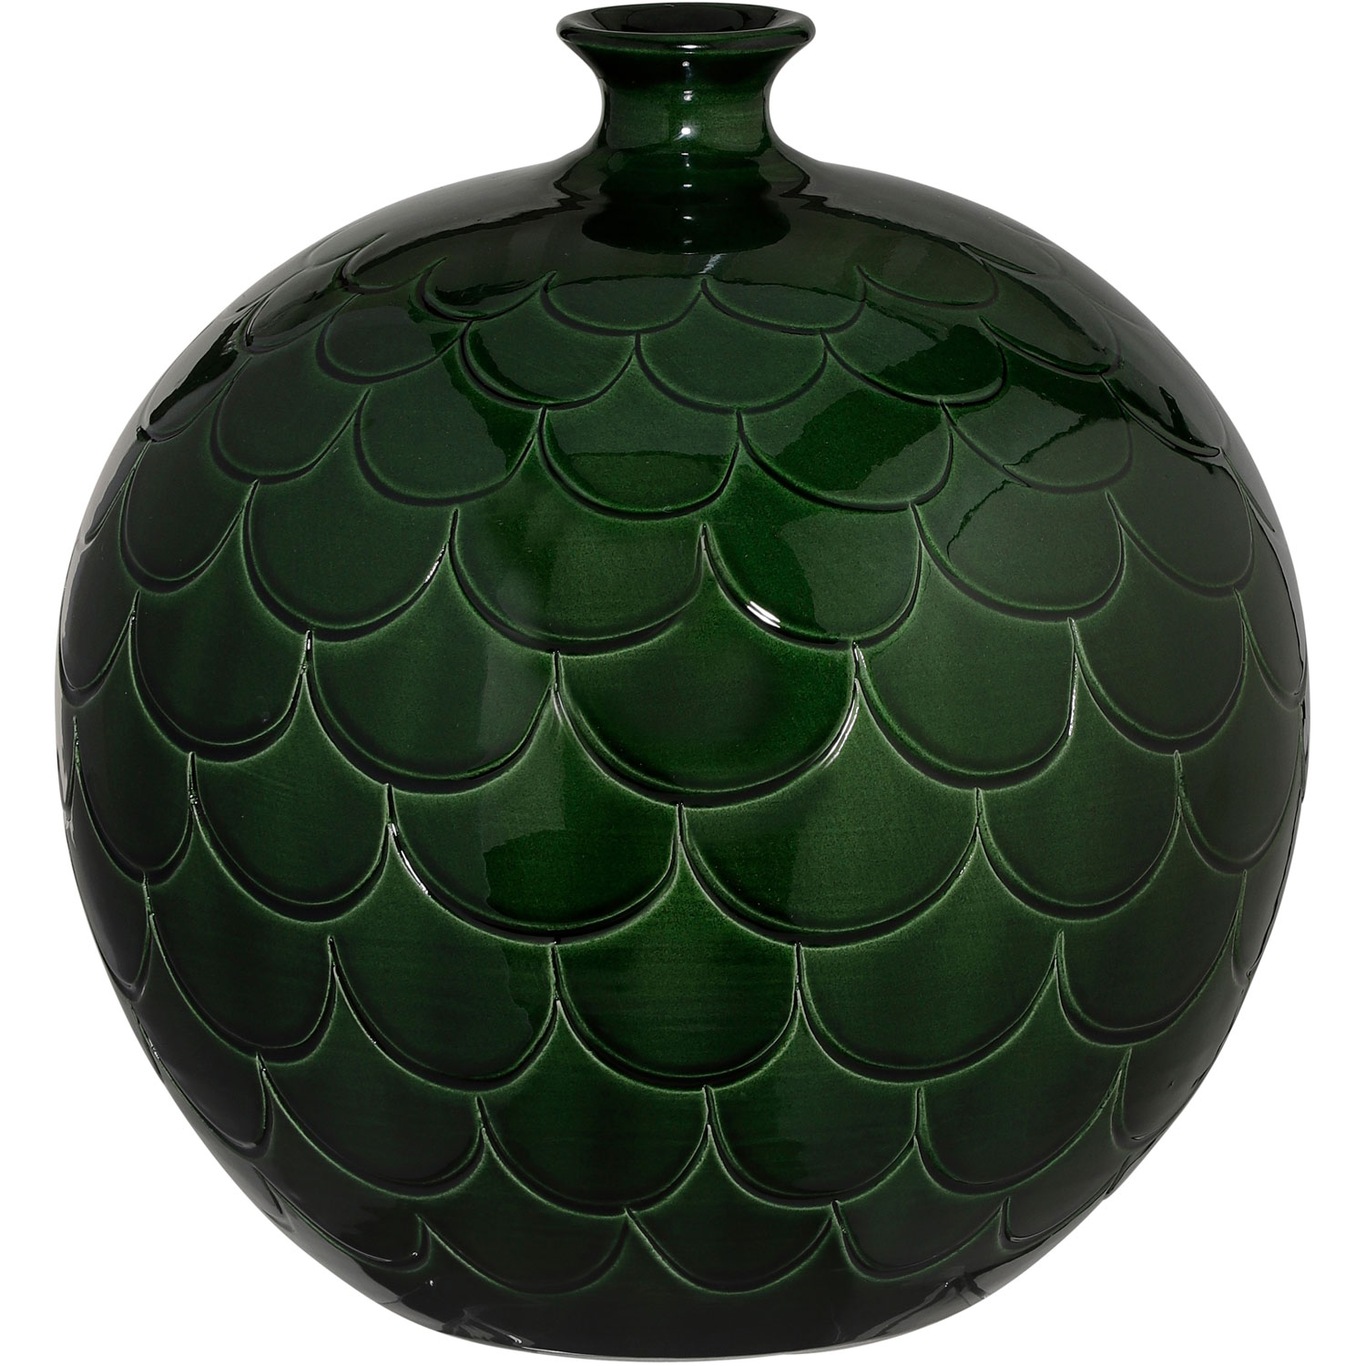 베르그 포터 Misty 화병 꽃병 23 cm 그린 Bergs Potter Misty Vase 23 cm  Green 06425